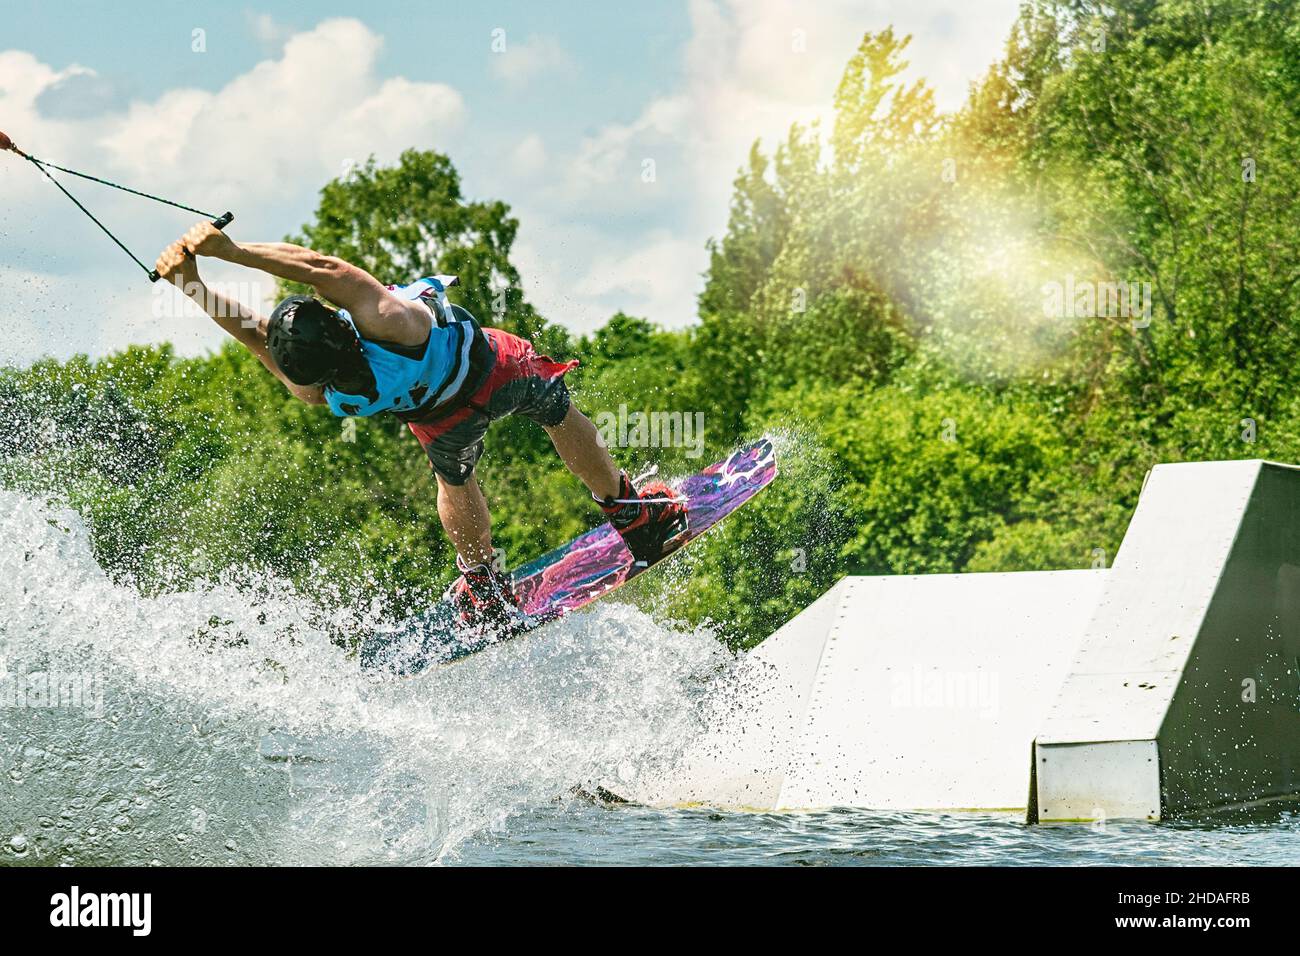 Junge aktive Profisportlerin, die auf dem Wakeboard in der Luft springt, Wassersport im Fluss Stockfoto